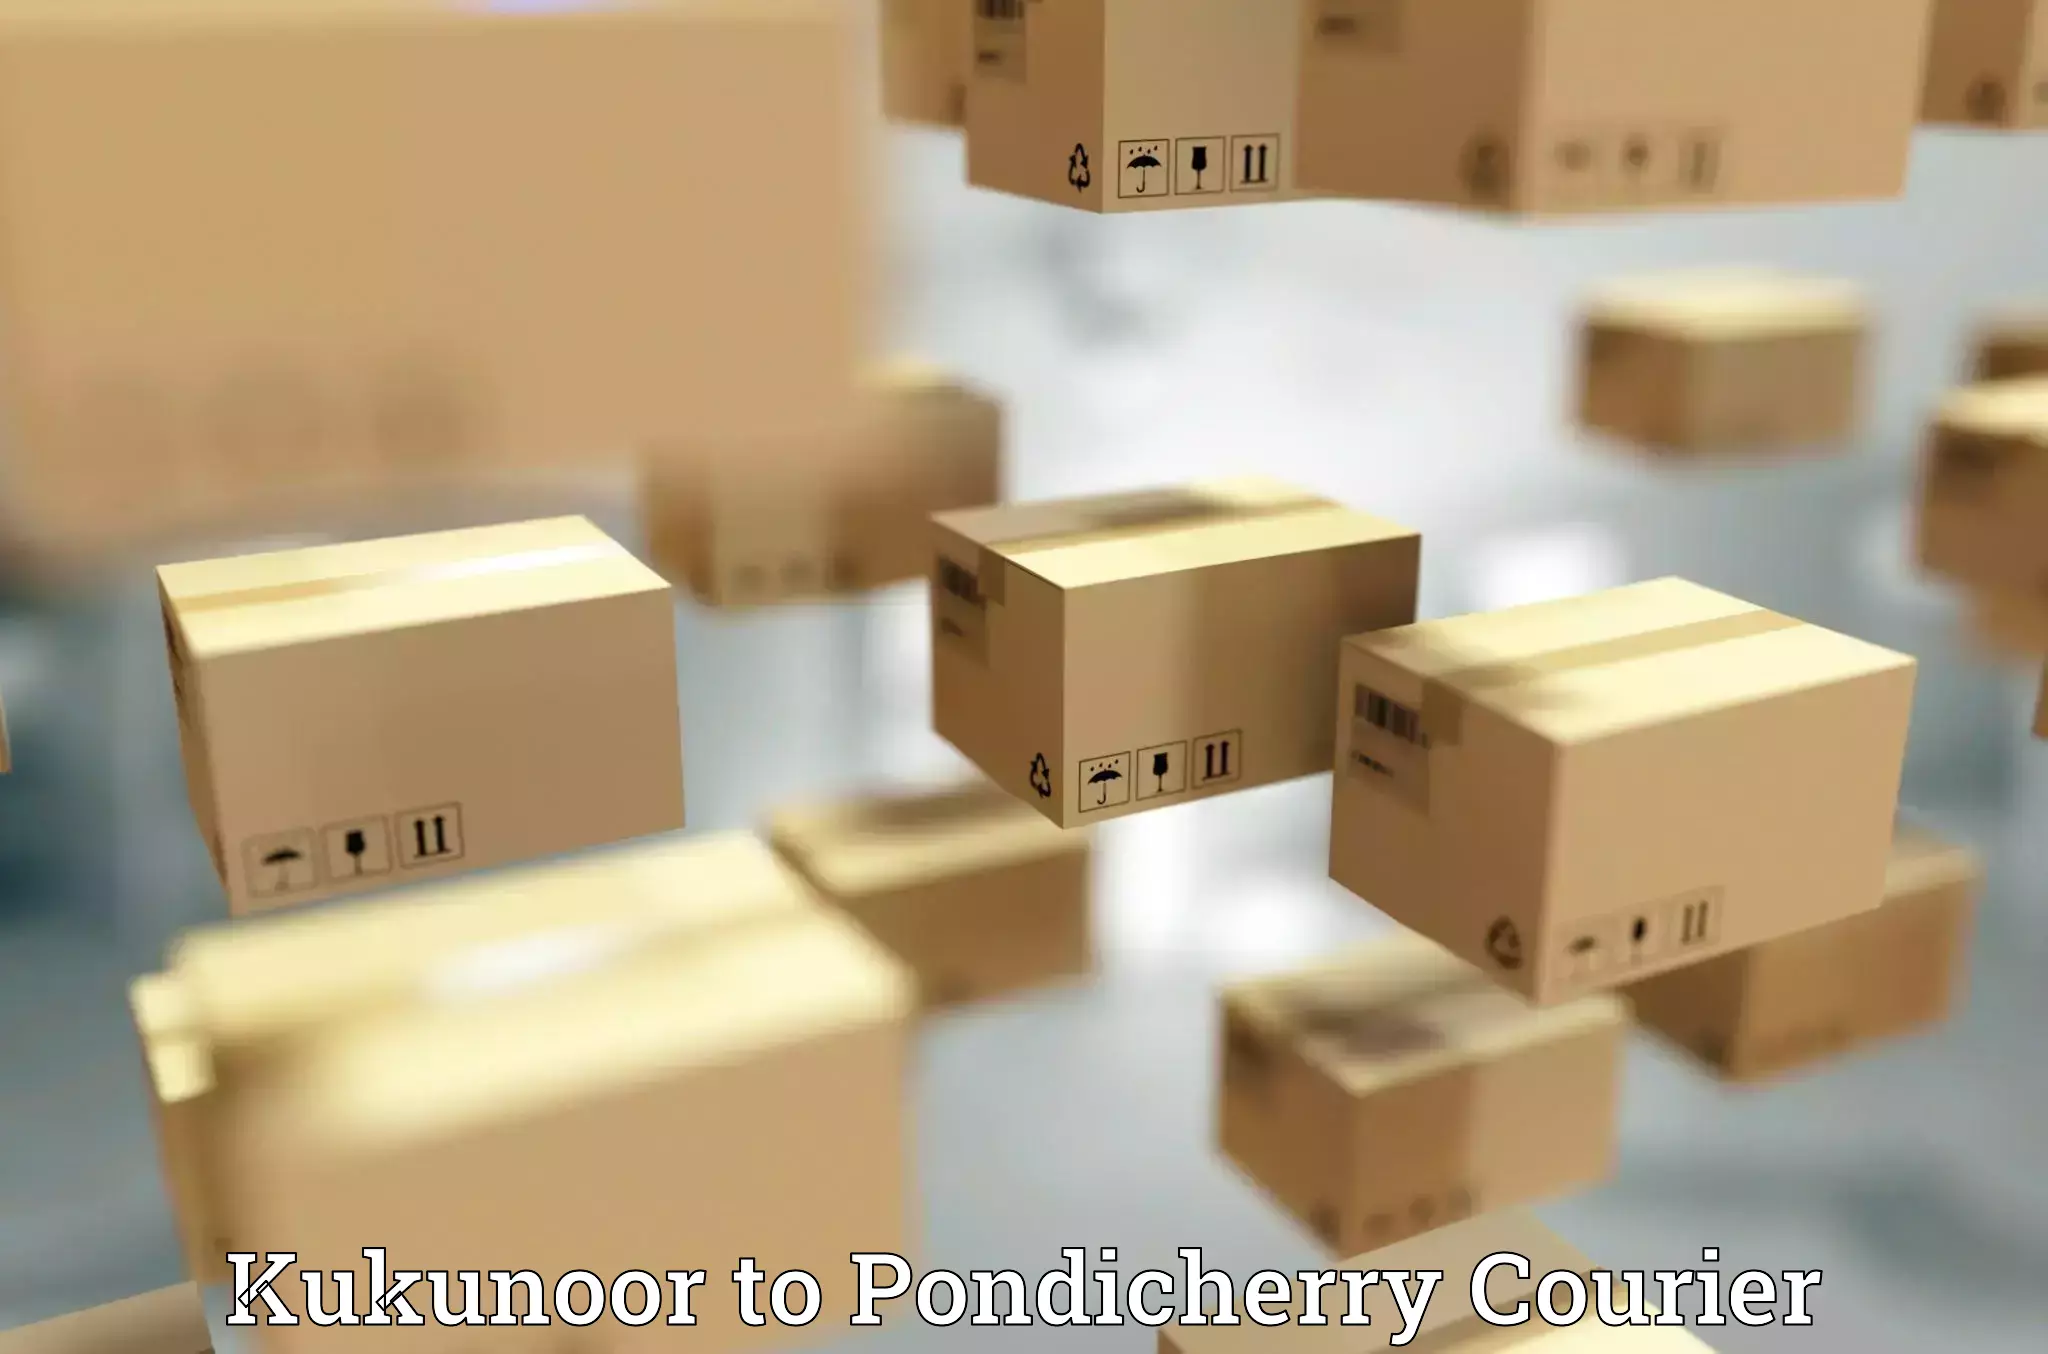 Weekend courier service Kukunoor to Pondicherry University